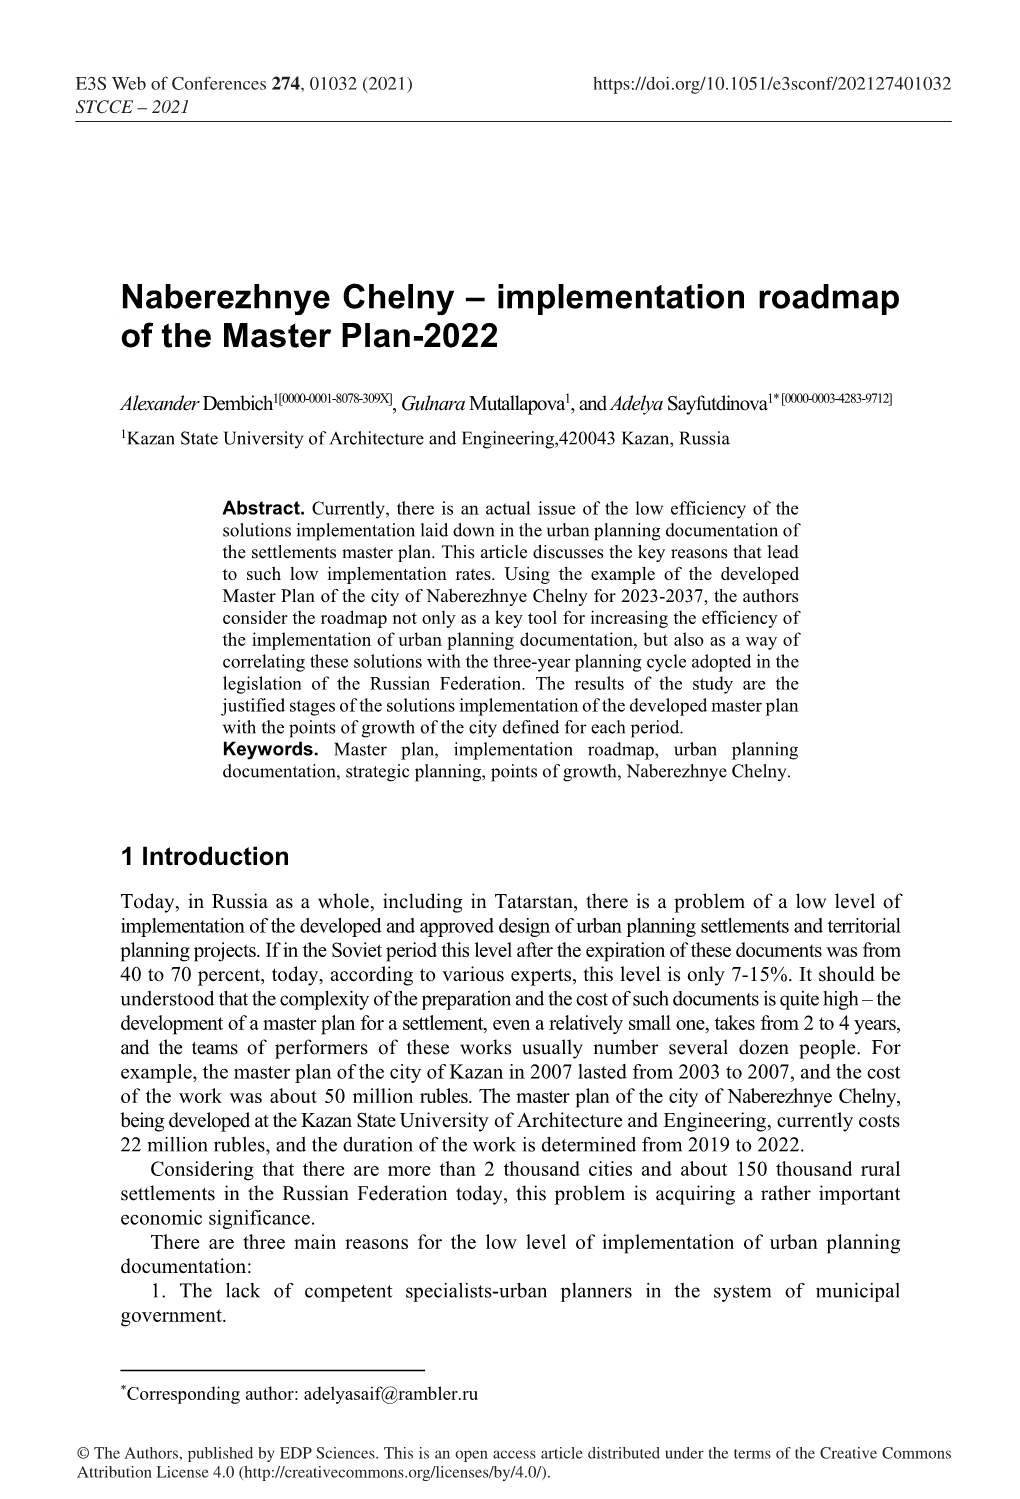 Naberezhnye Chelny – Implementation Roadmap of the Master Plan-2022